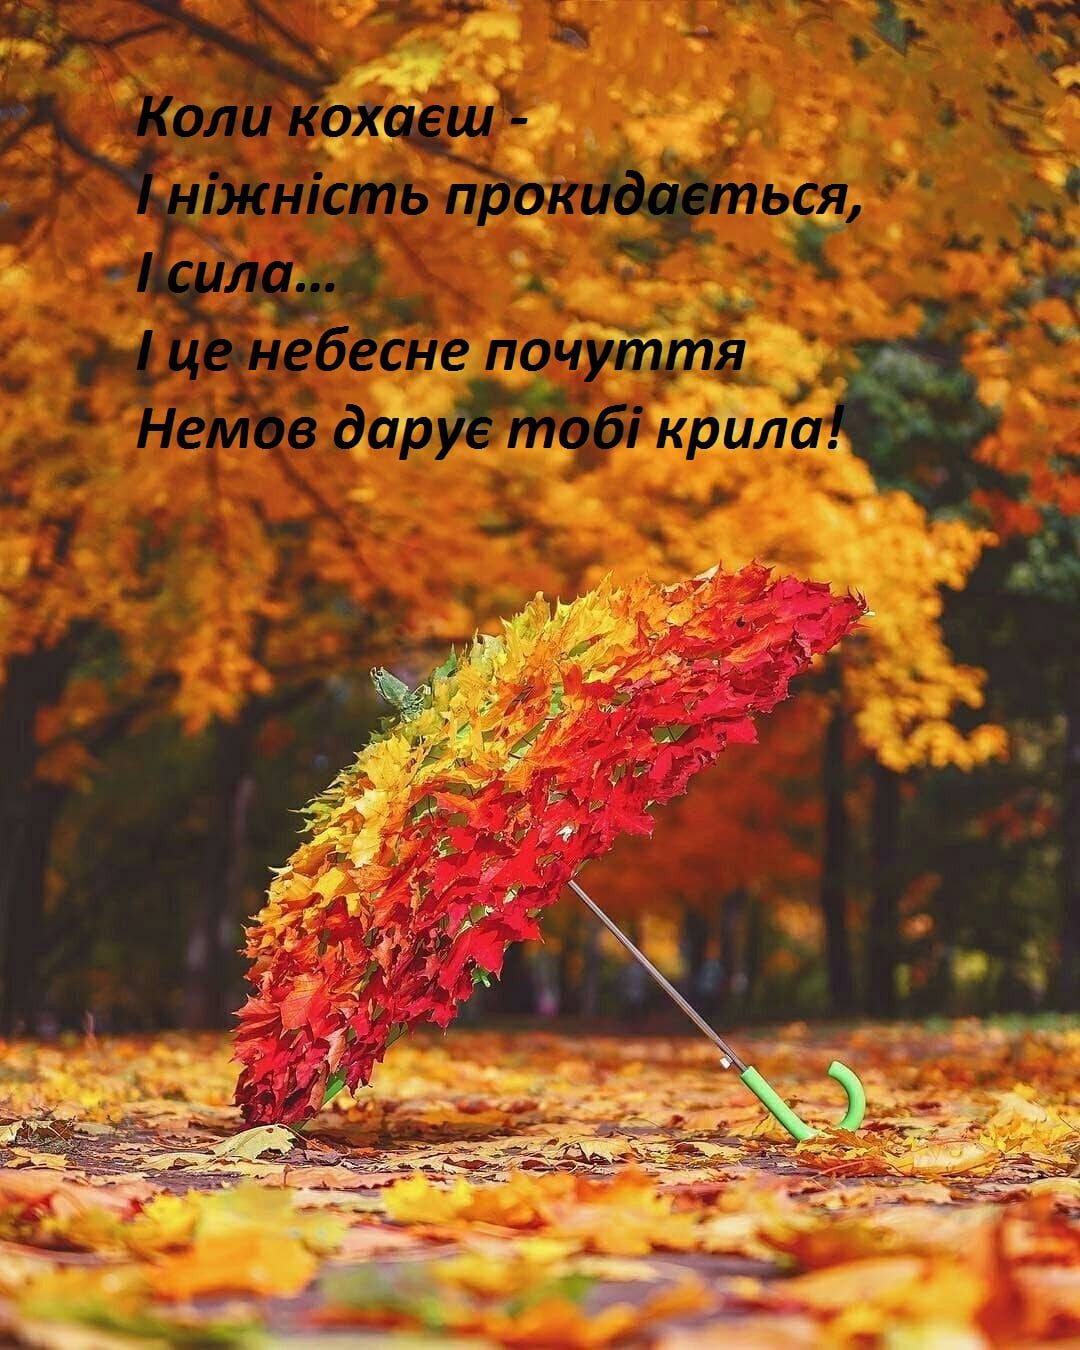 Цитати для інстграм про осінь і кохання: коли кохаєш восени